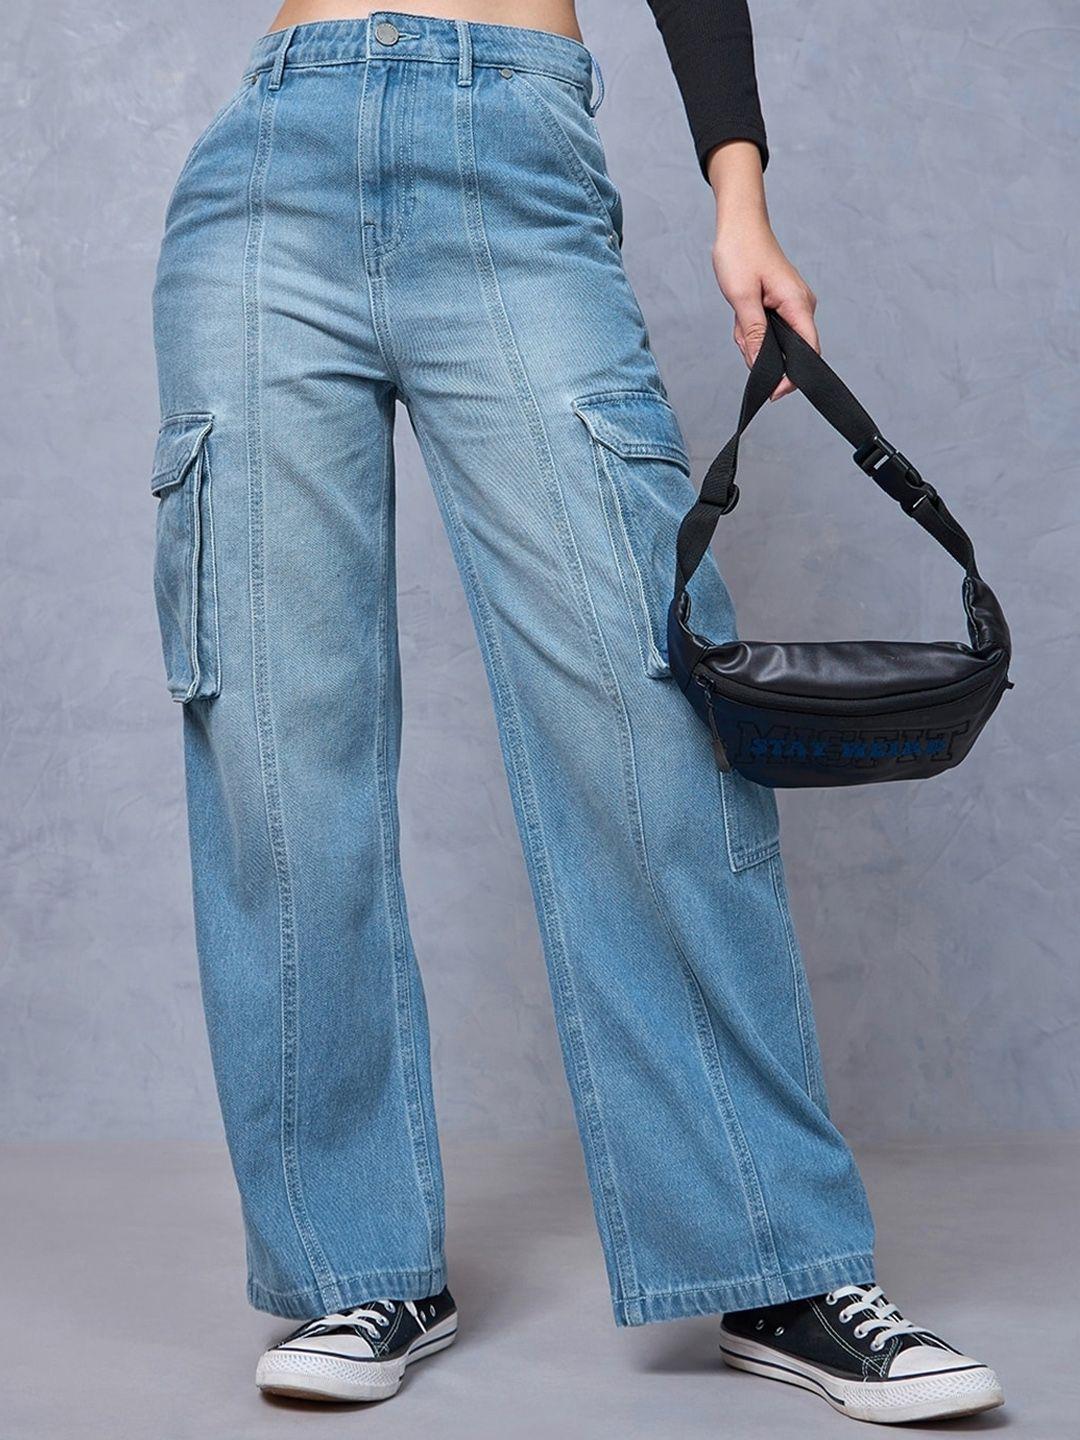 bewakoof women straight fit high-rise light fade cotton cargo jeans